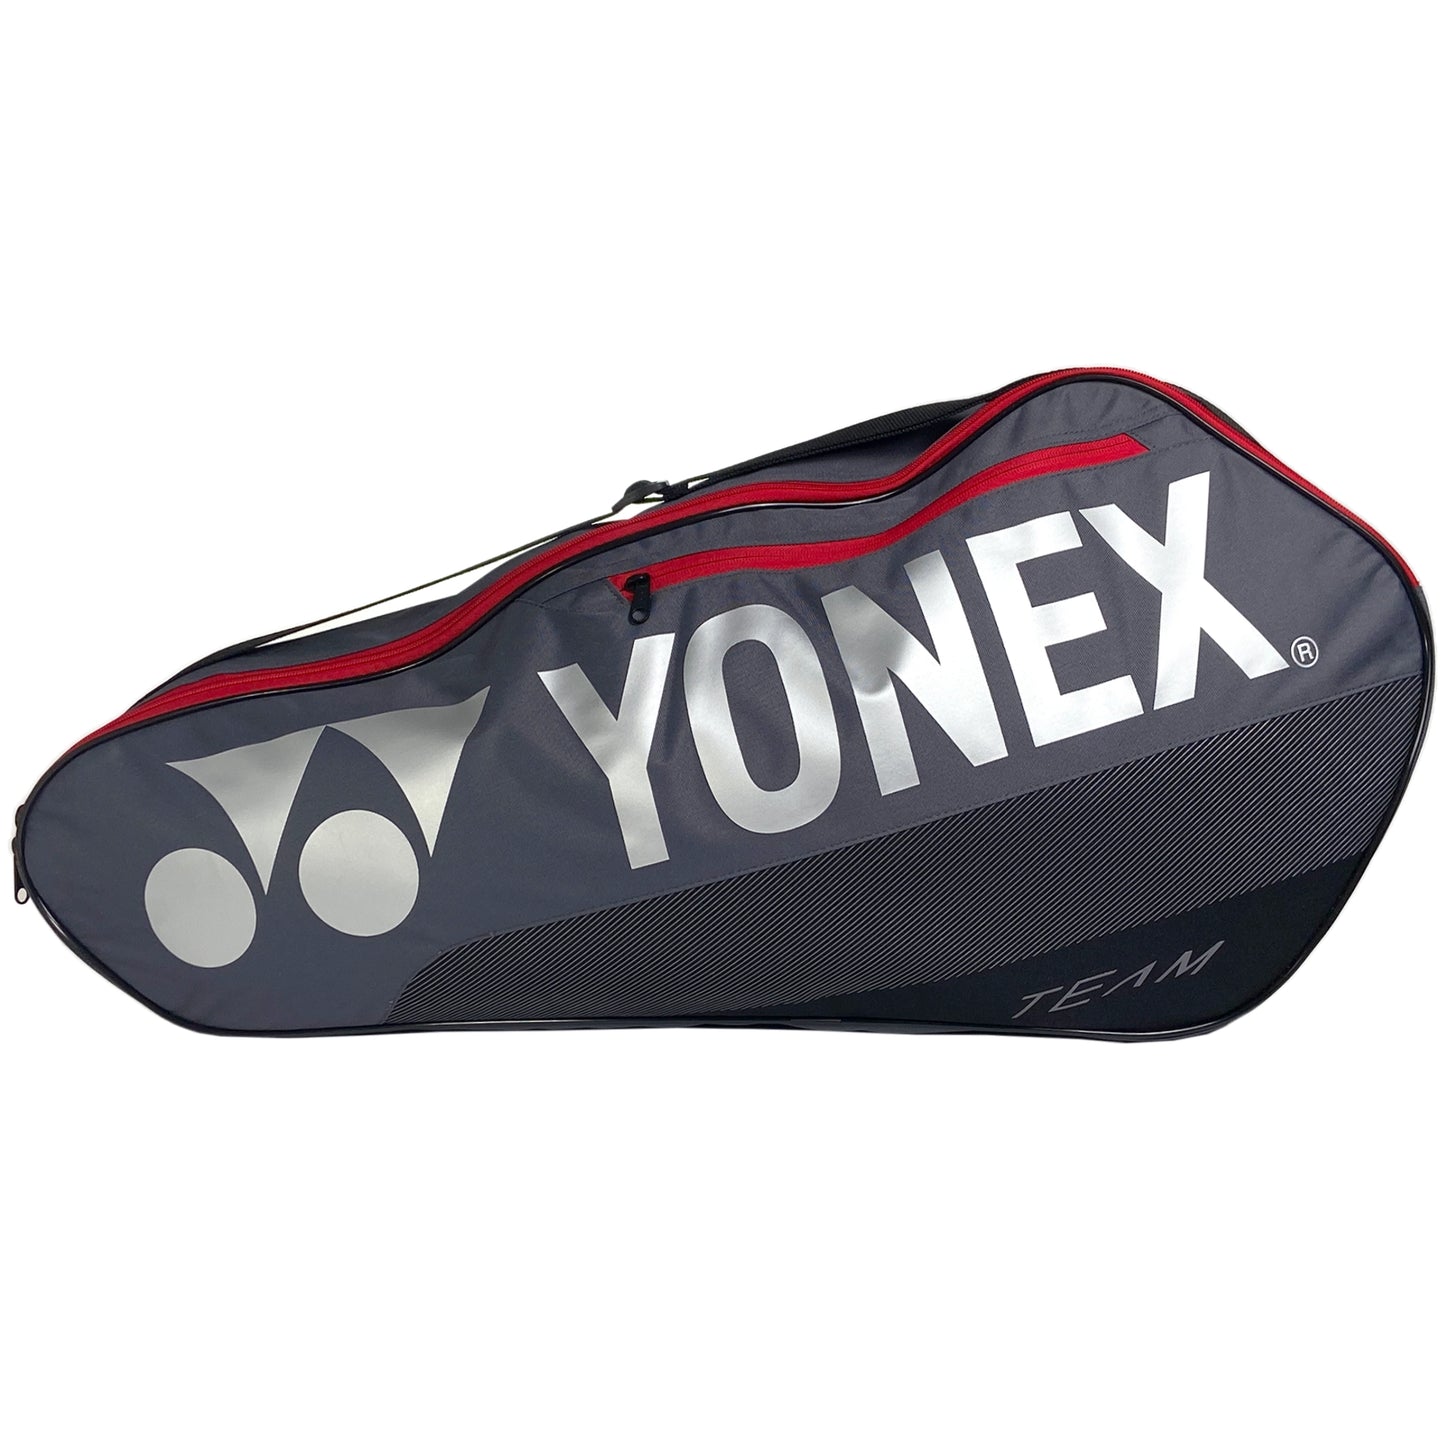 Yonex sac Team 3 raquettes (BA42123) GRPR